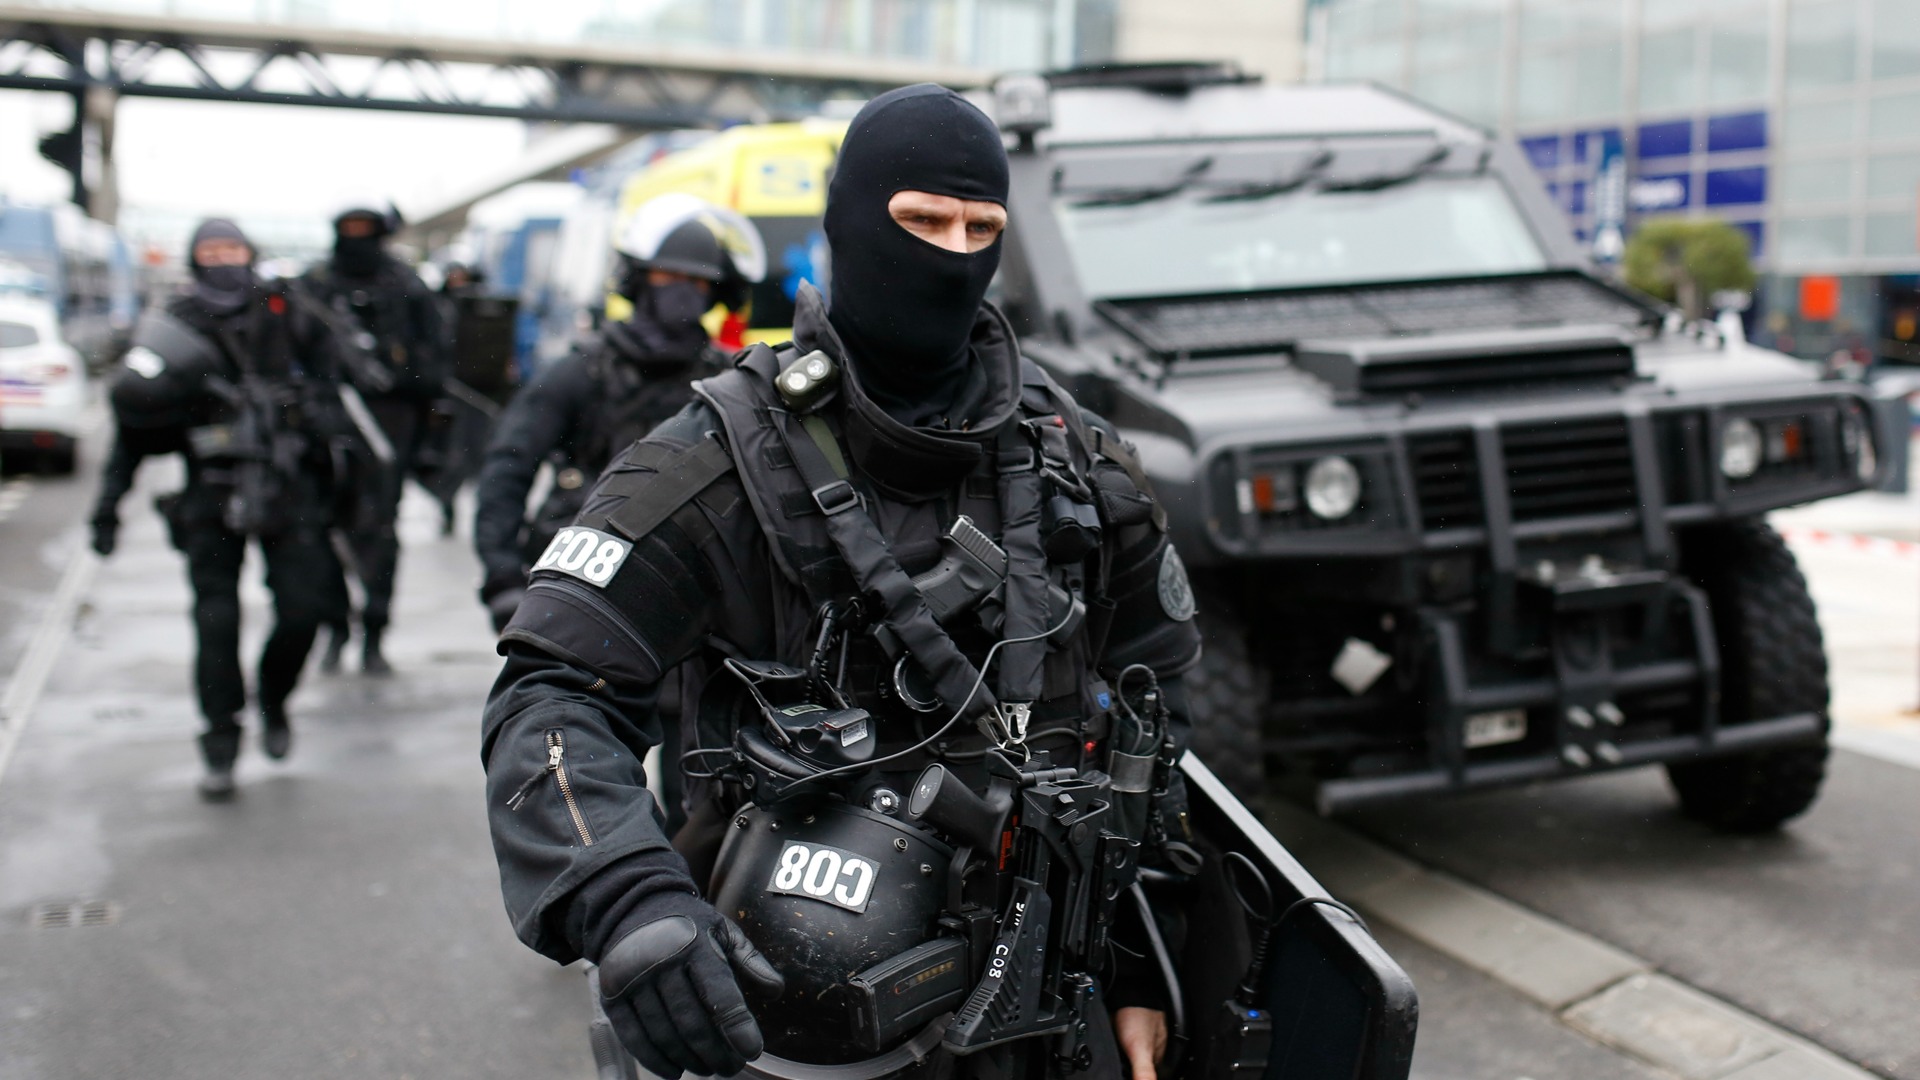 El atacante del aeropuerto parisino de Orly gritó que iba a "morir por Alá"